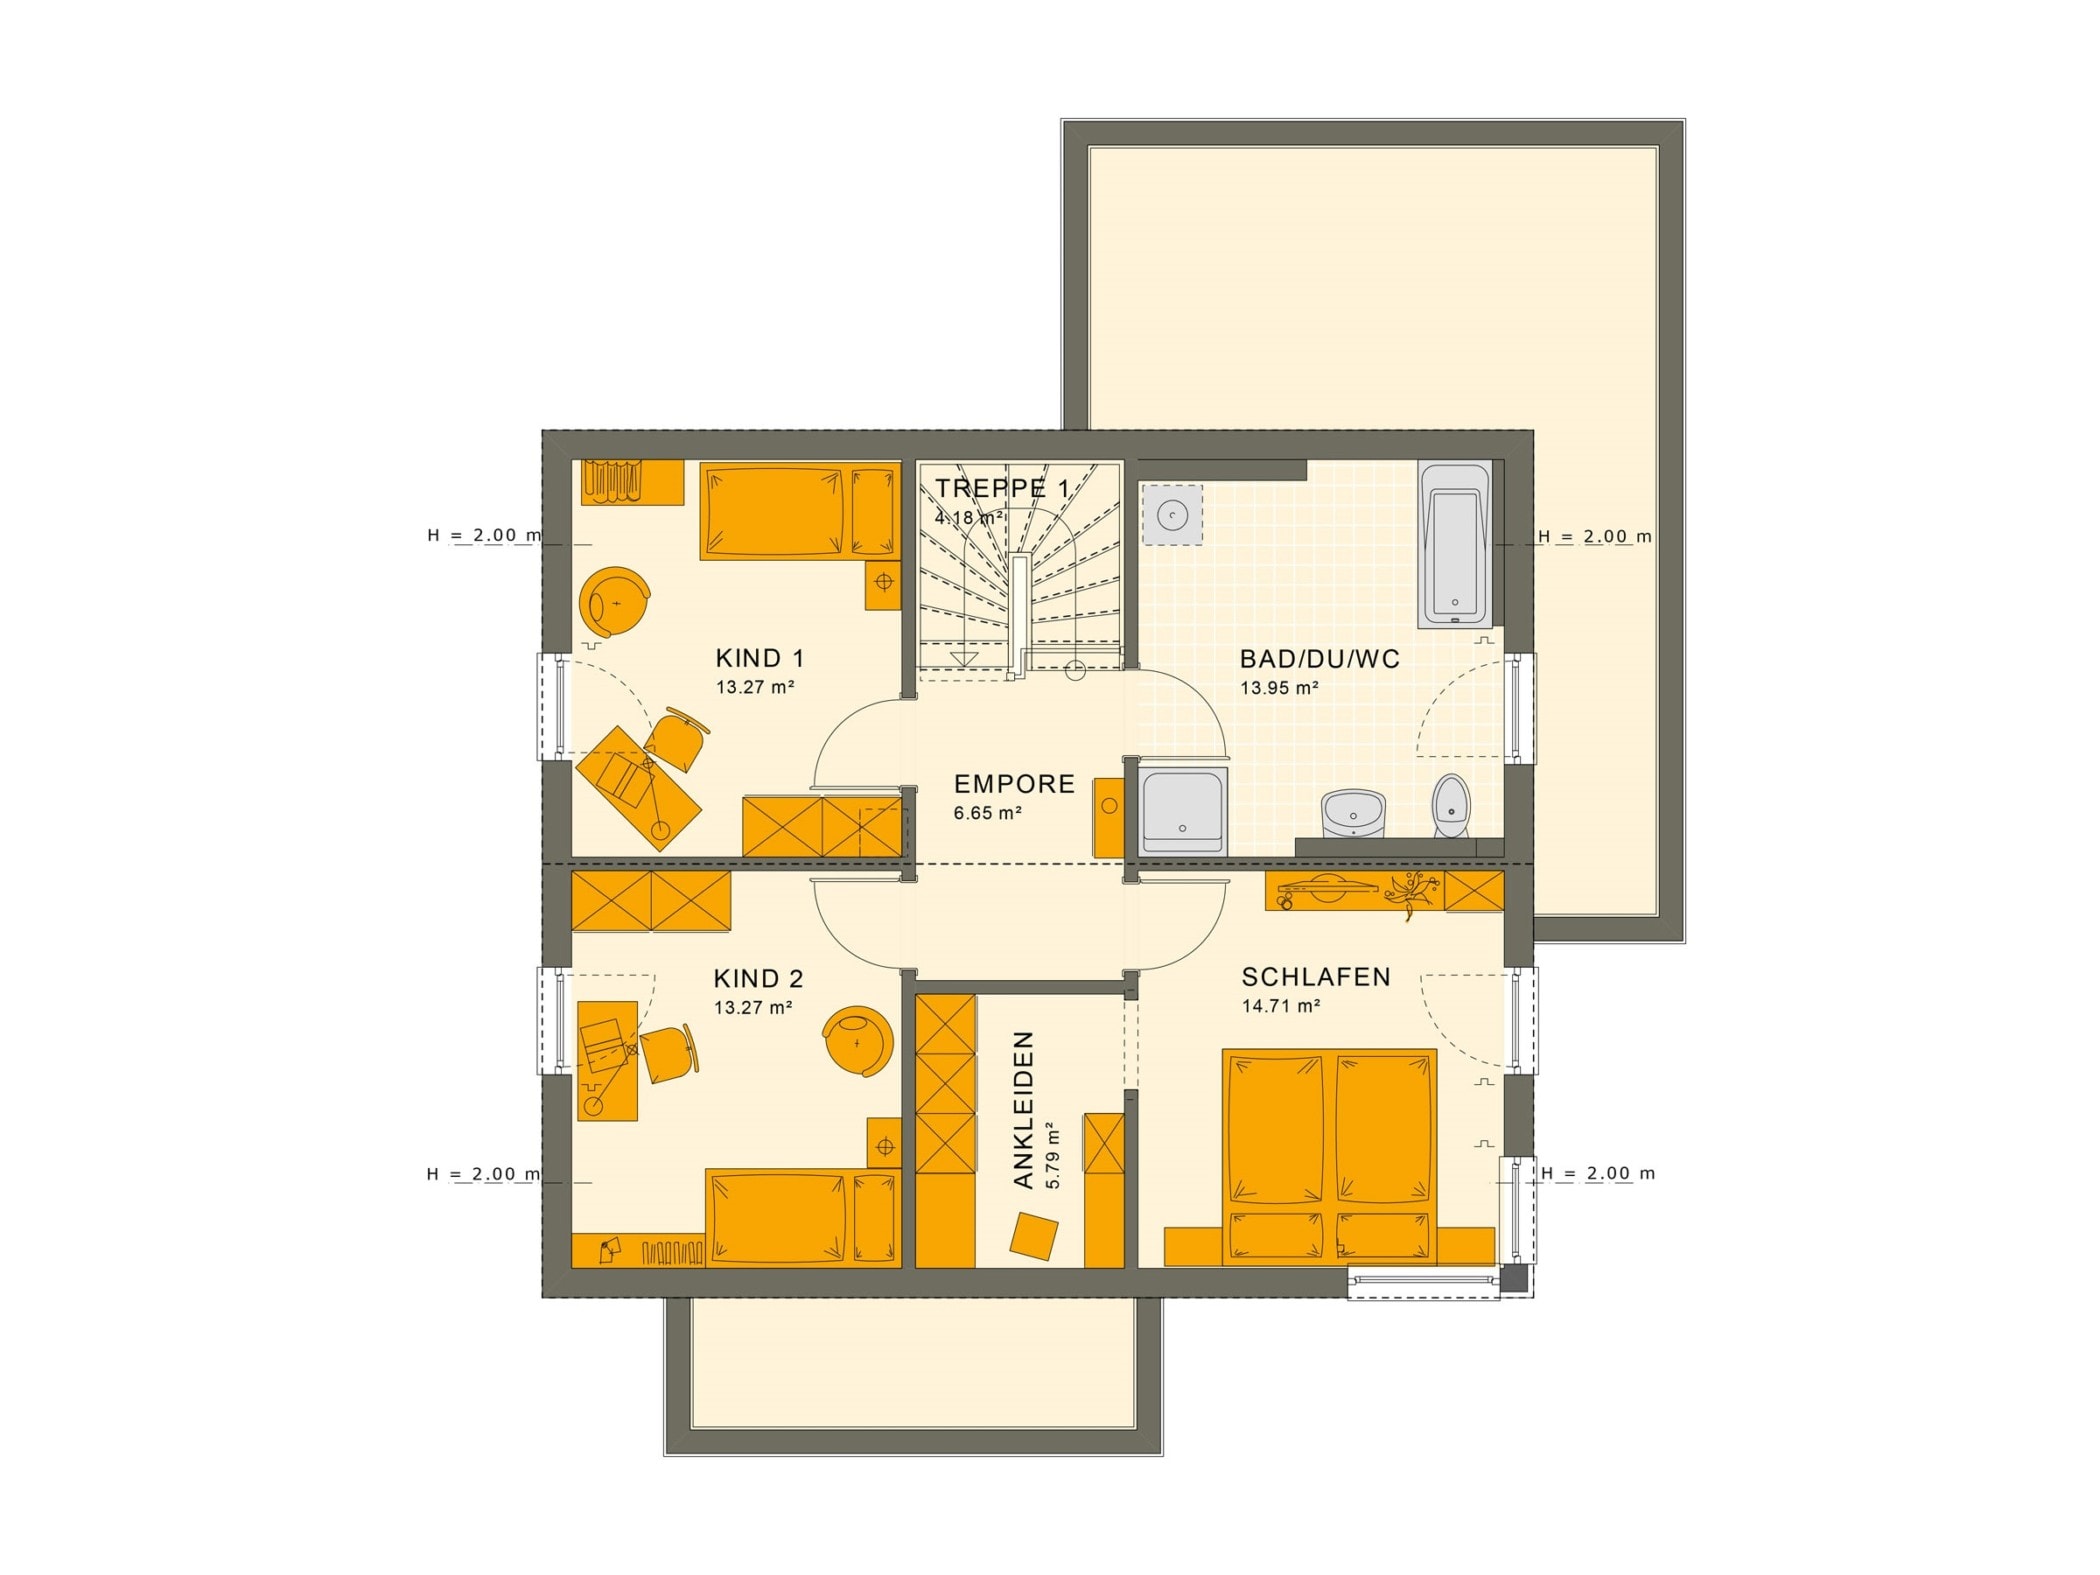 Einfamilienhaus Grundriss Obergeschoss mit Satteldach, 5 Zimmer, 145 qm - Living Haus Fertighaus SUNSHINE 143 V5 - HausbauDirekt.de